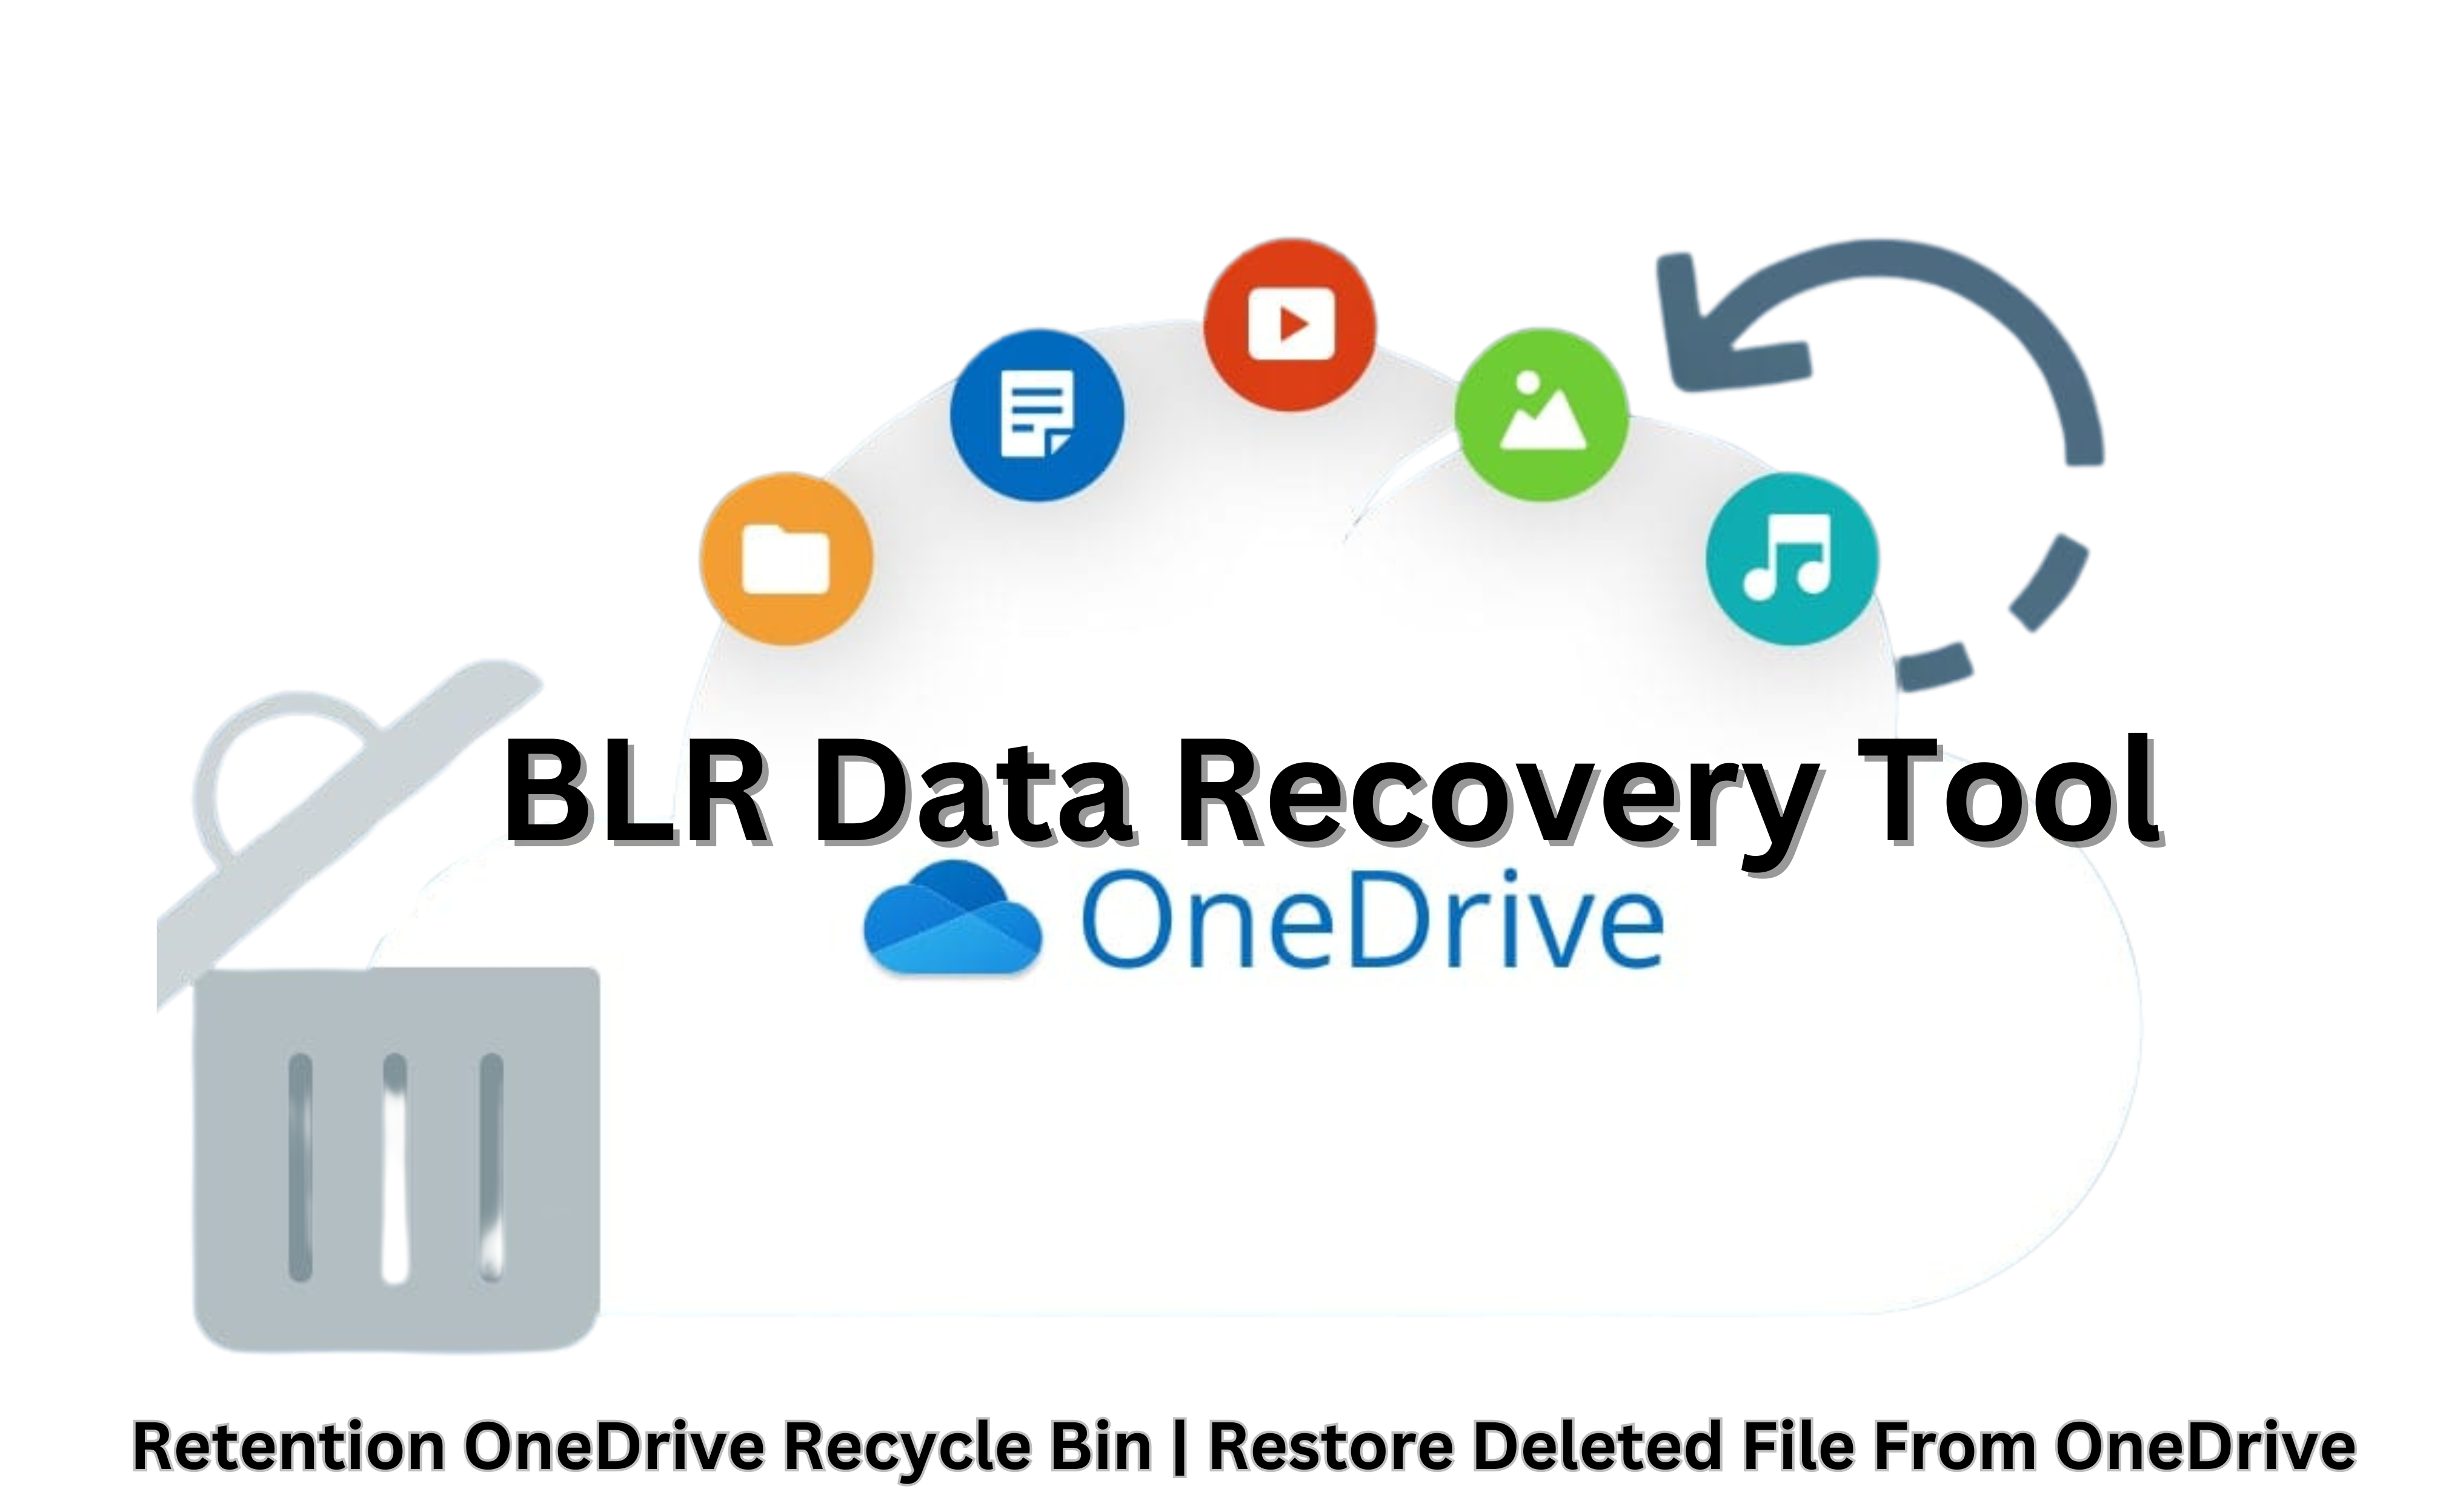 OneDrive recycle bin retention